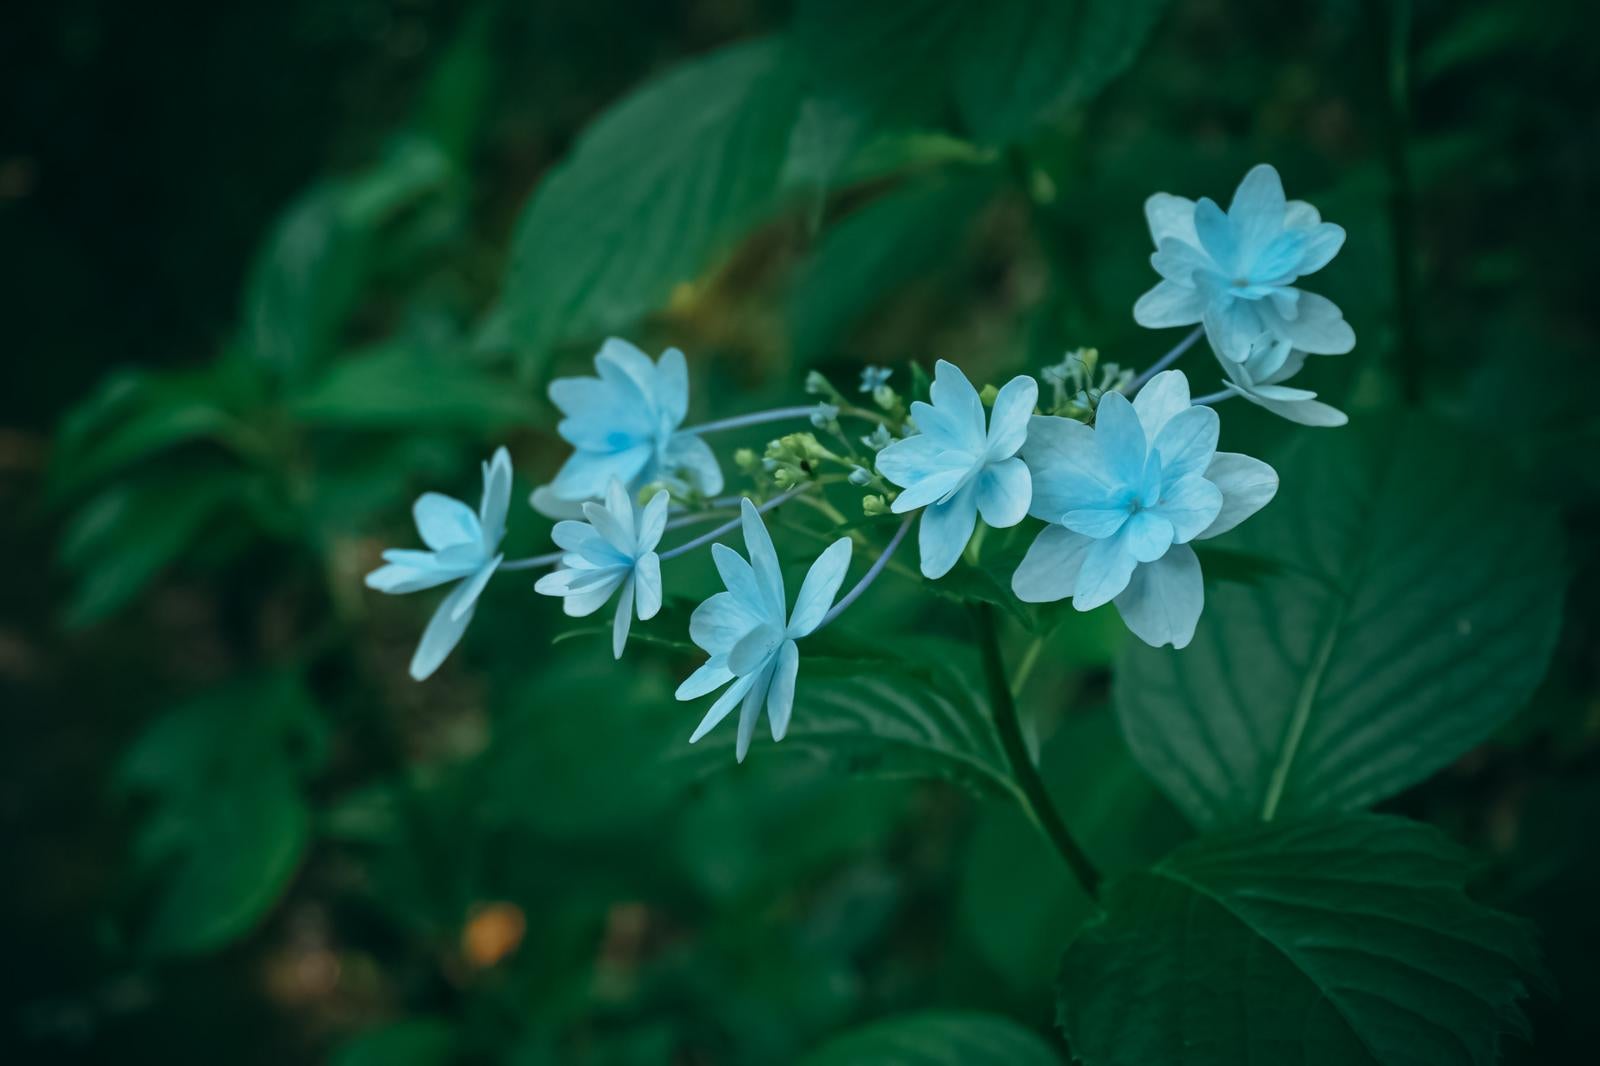 「暗がりの青い紫陽花の花びら」の写真